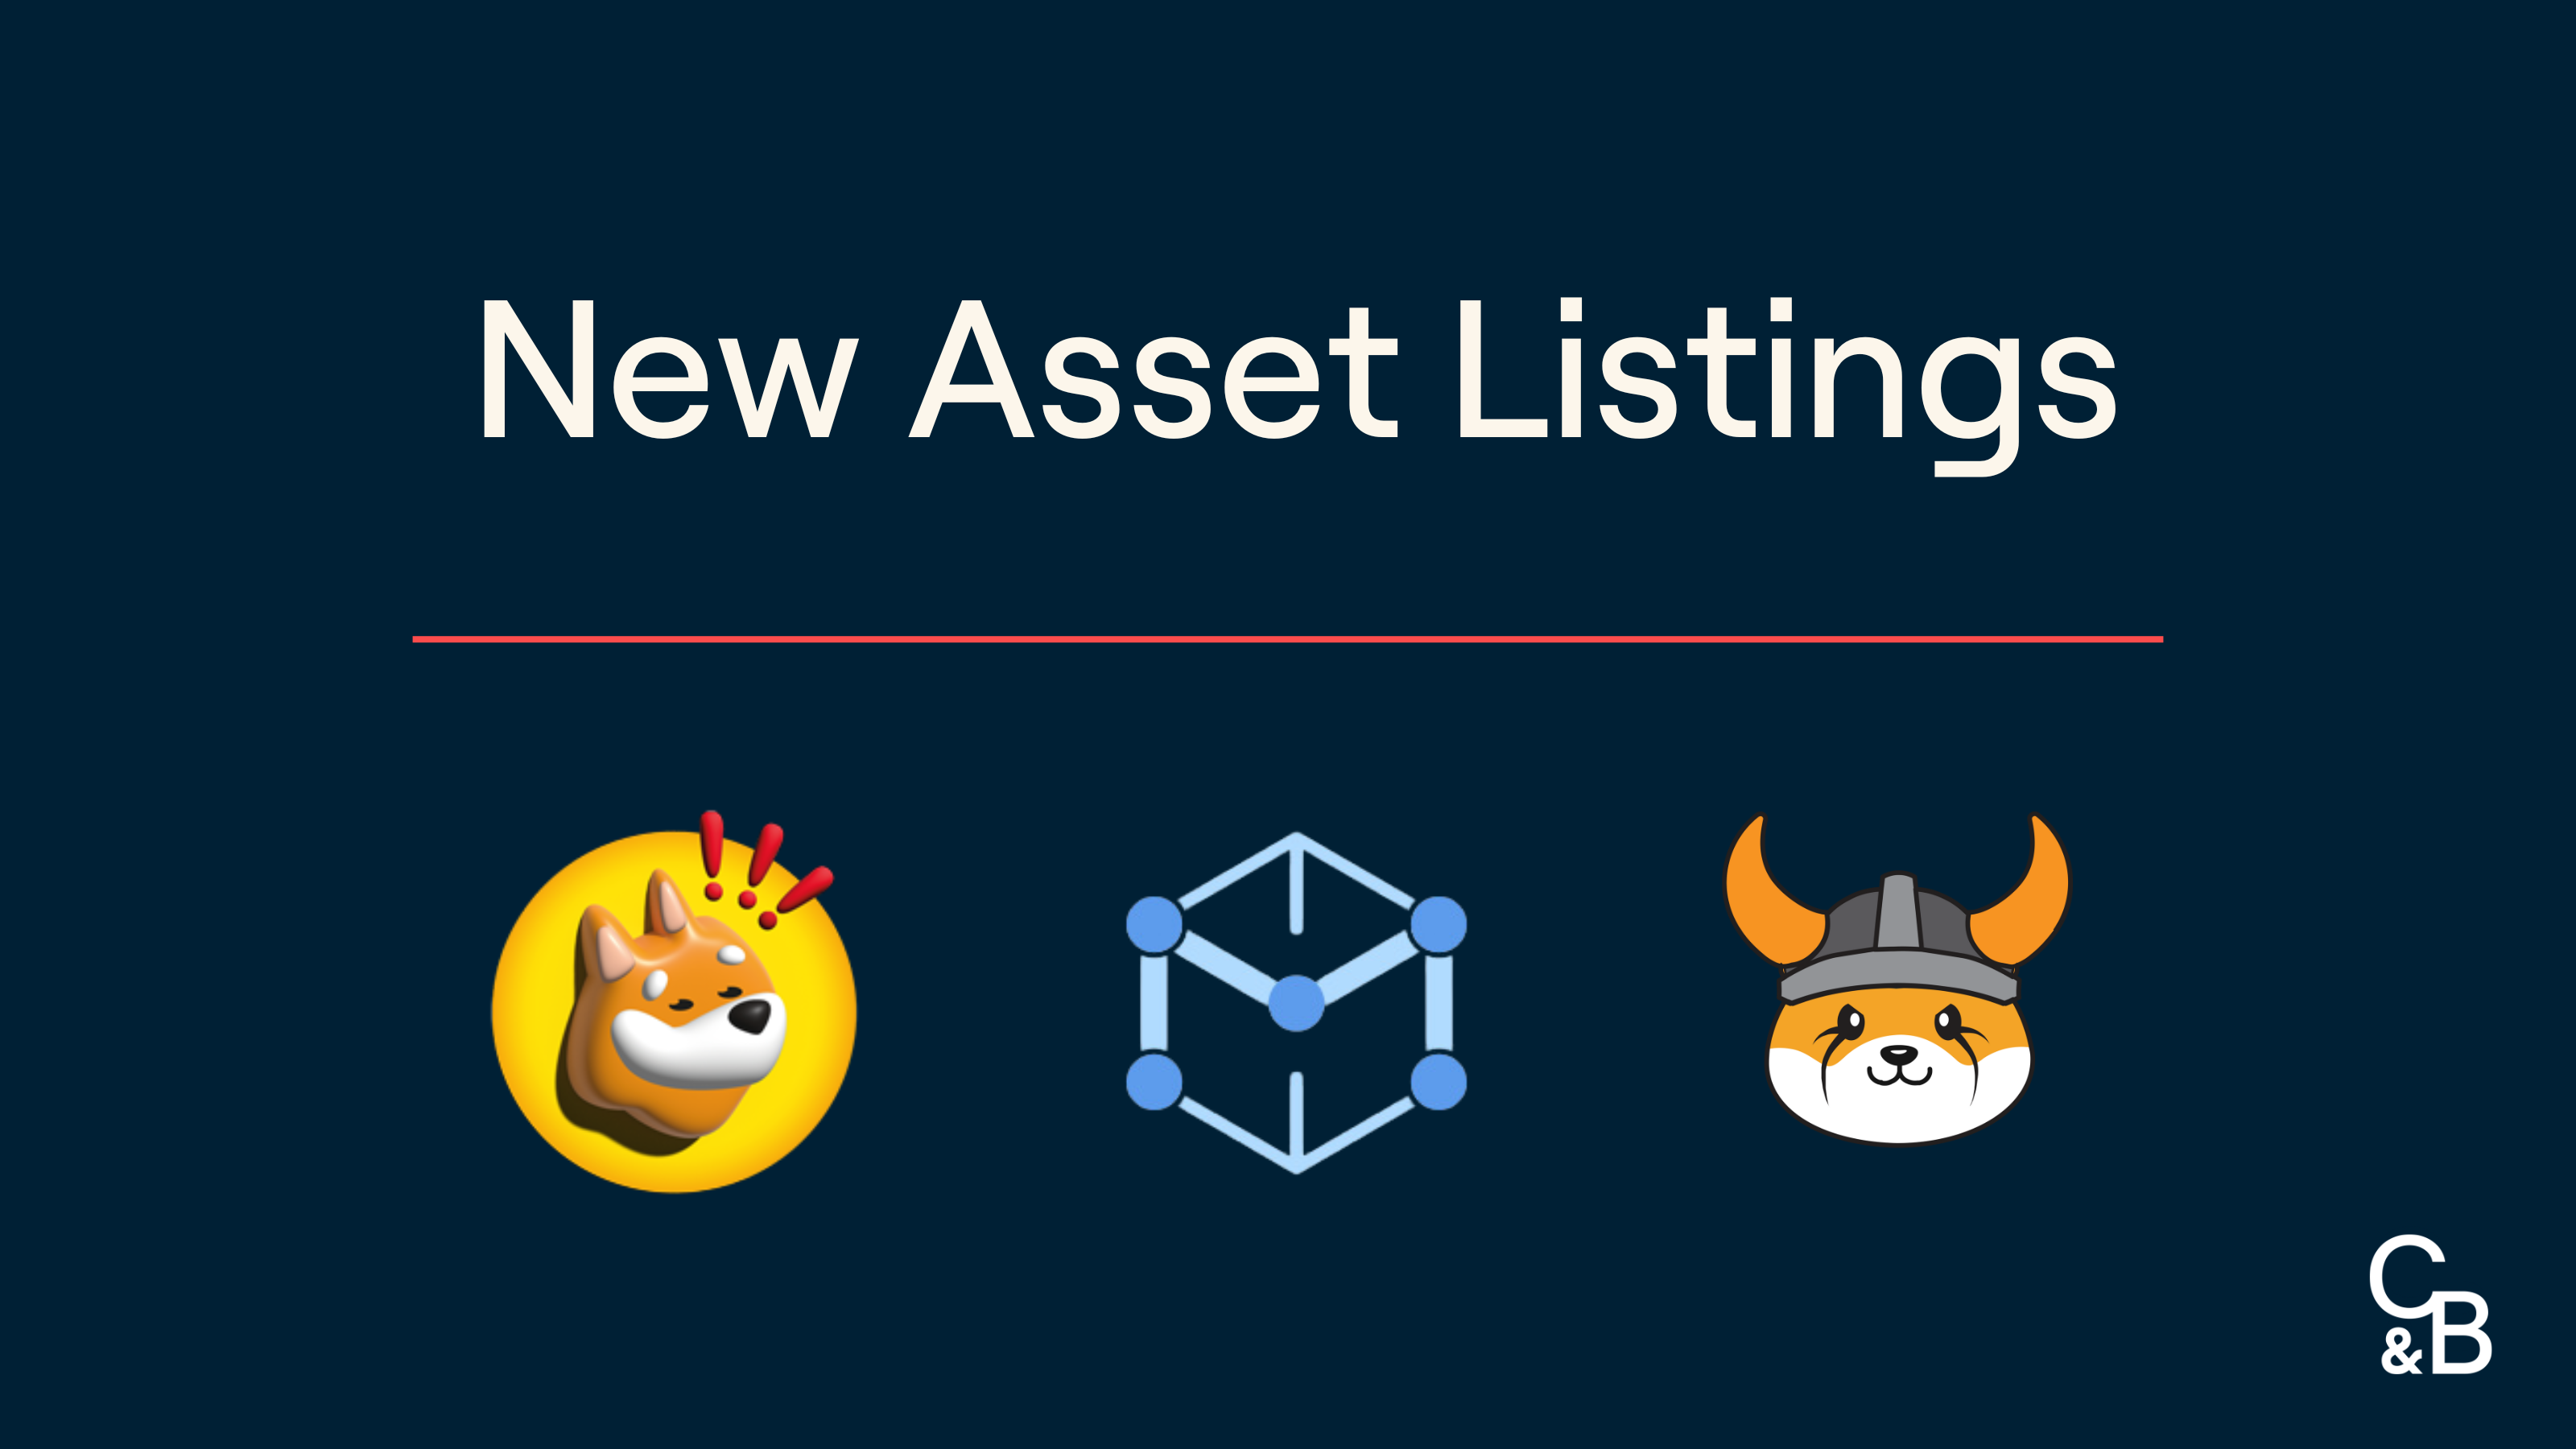 New Asset Listings at Caleb & Brown